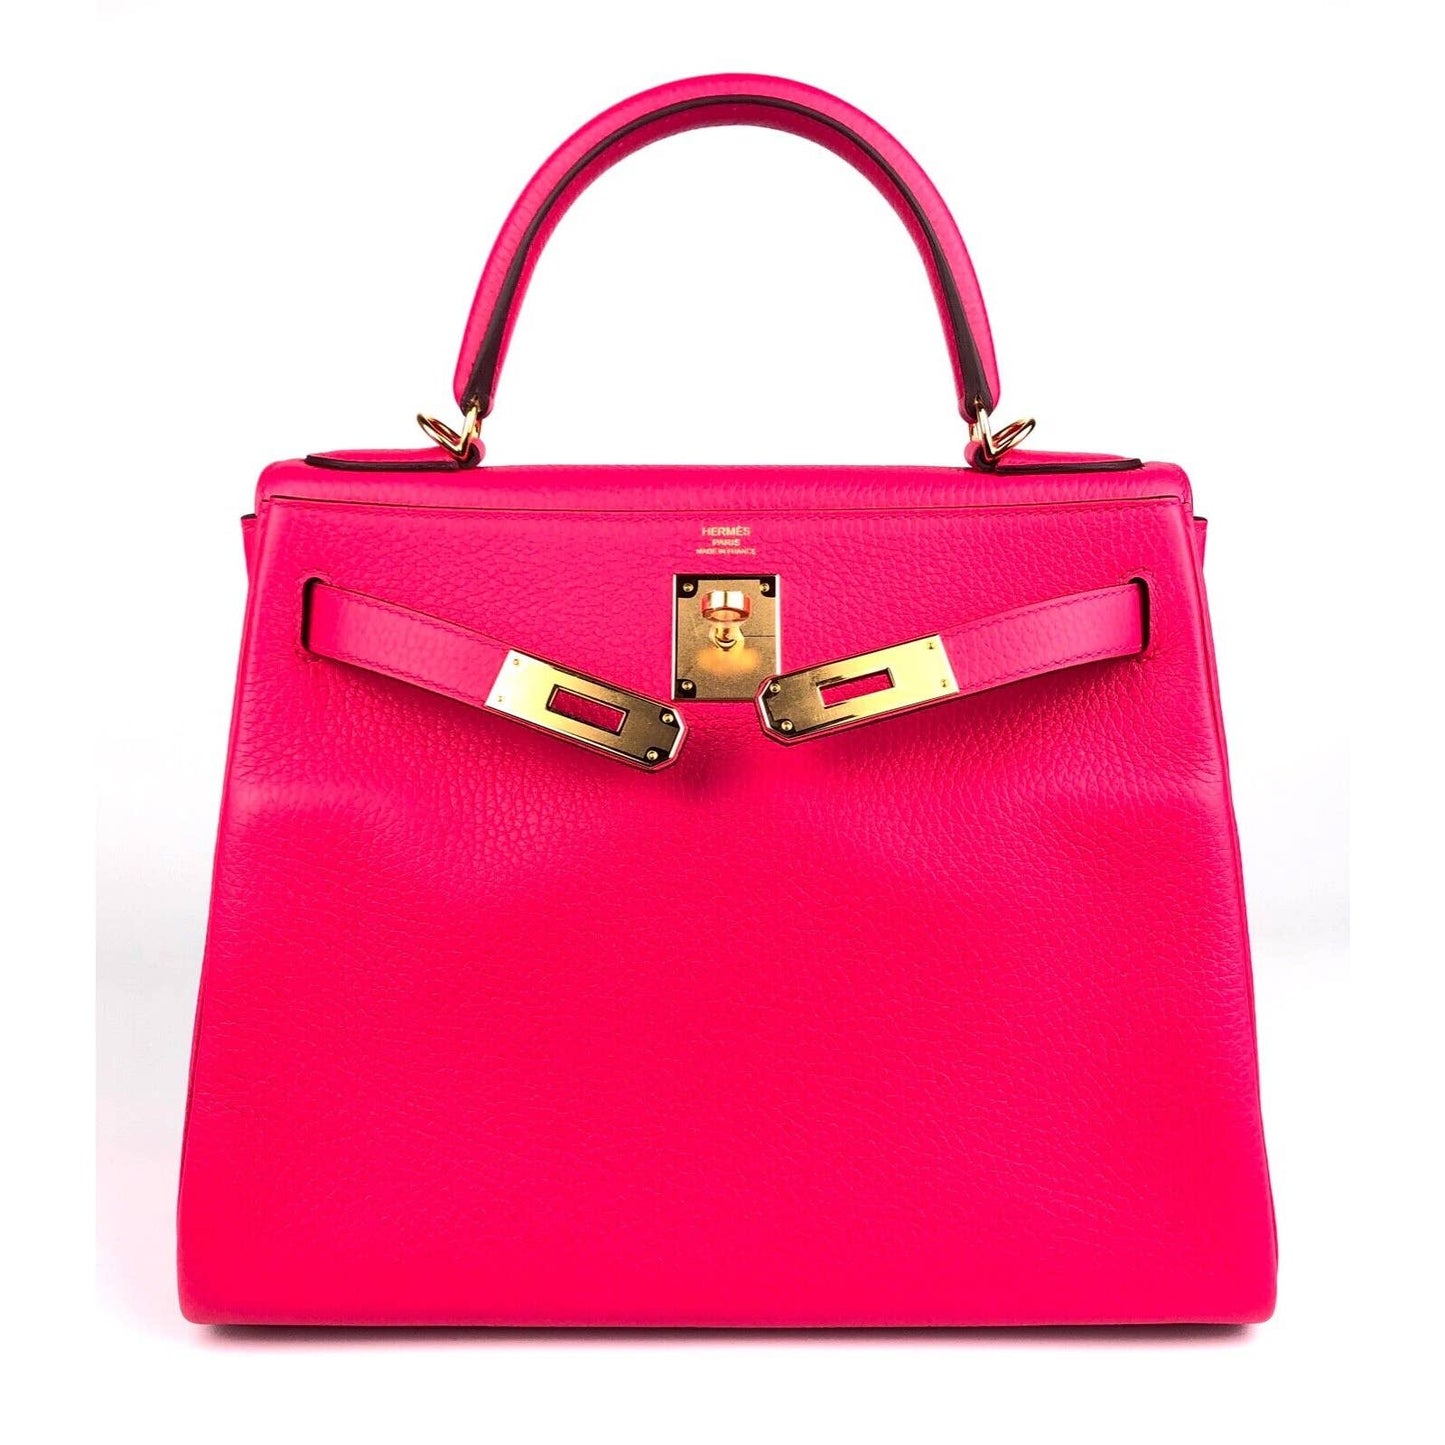 Hermes Kelly 28 Rose Extreme Pink Leather Shoulder Bag Gold Hardware 2019